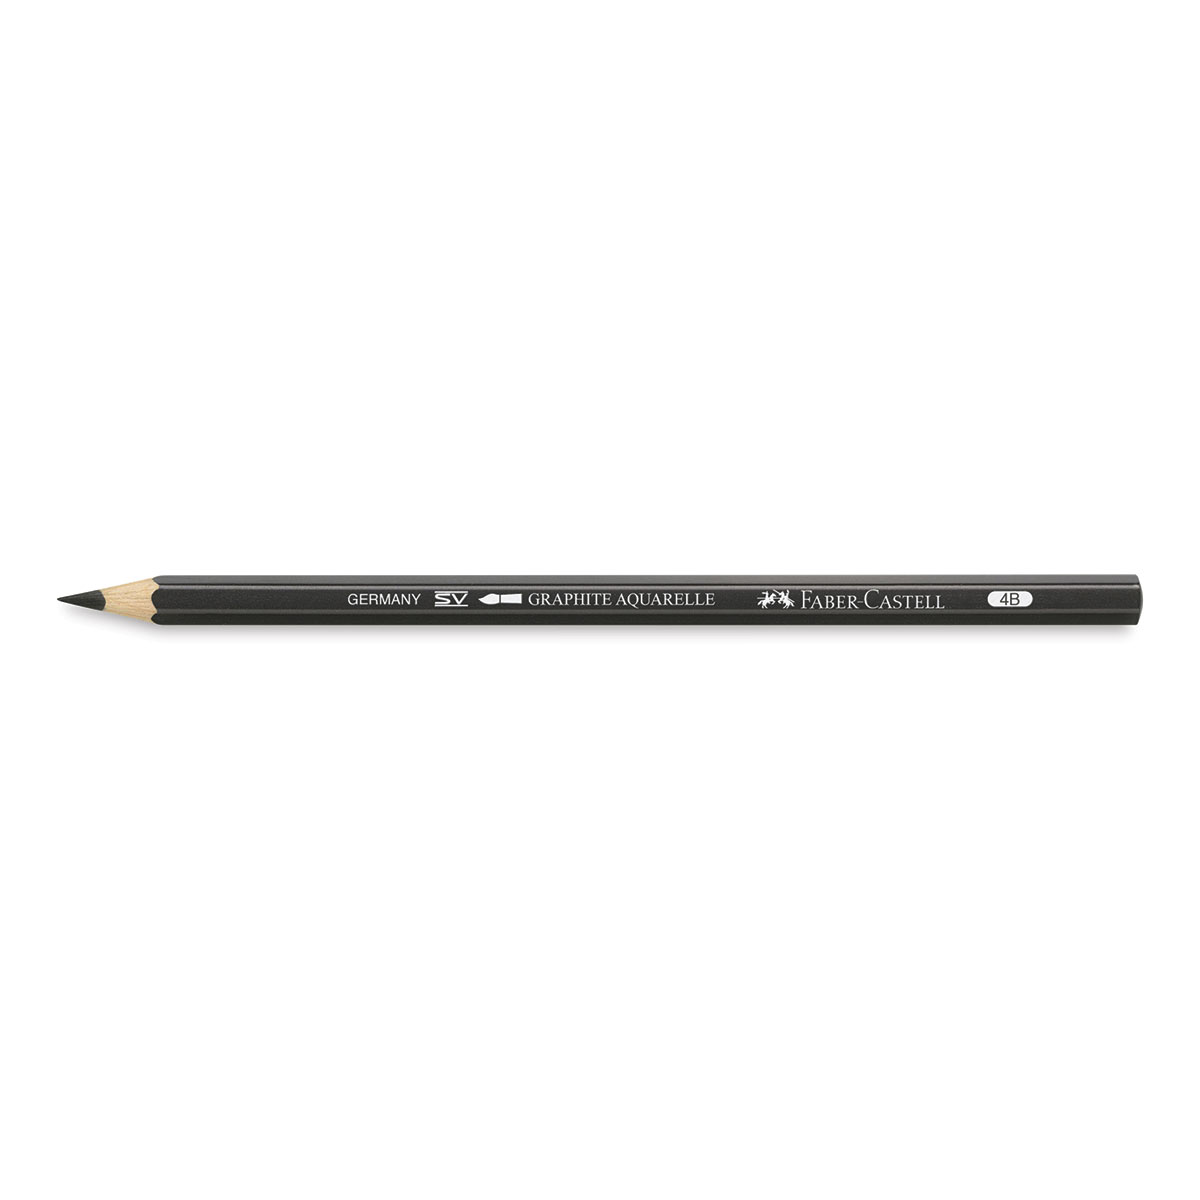 Crayon graphite 9000 Faber-Castel - Crayon aquarellable